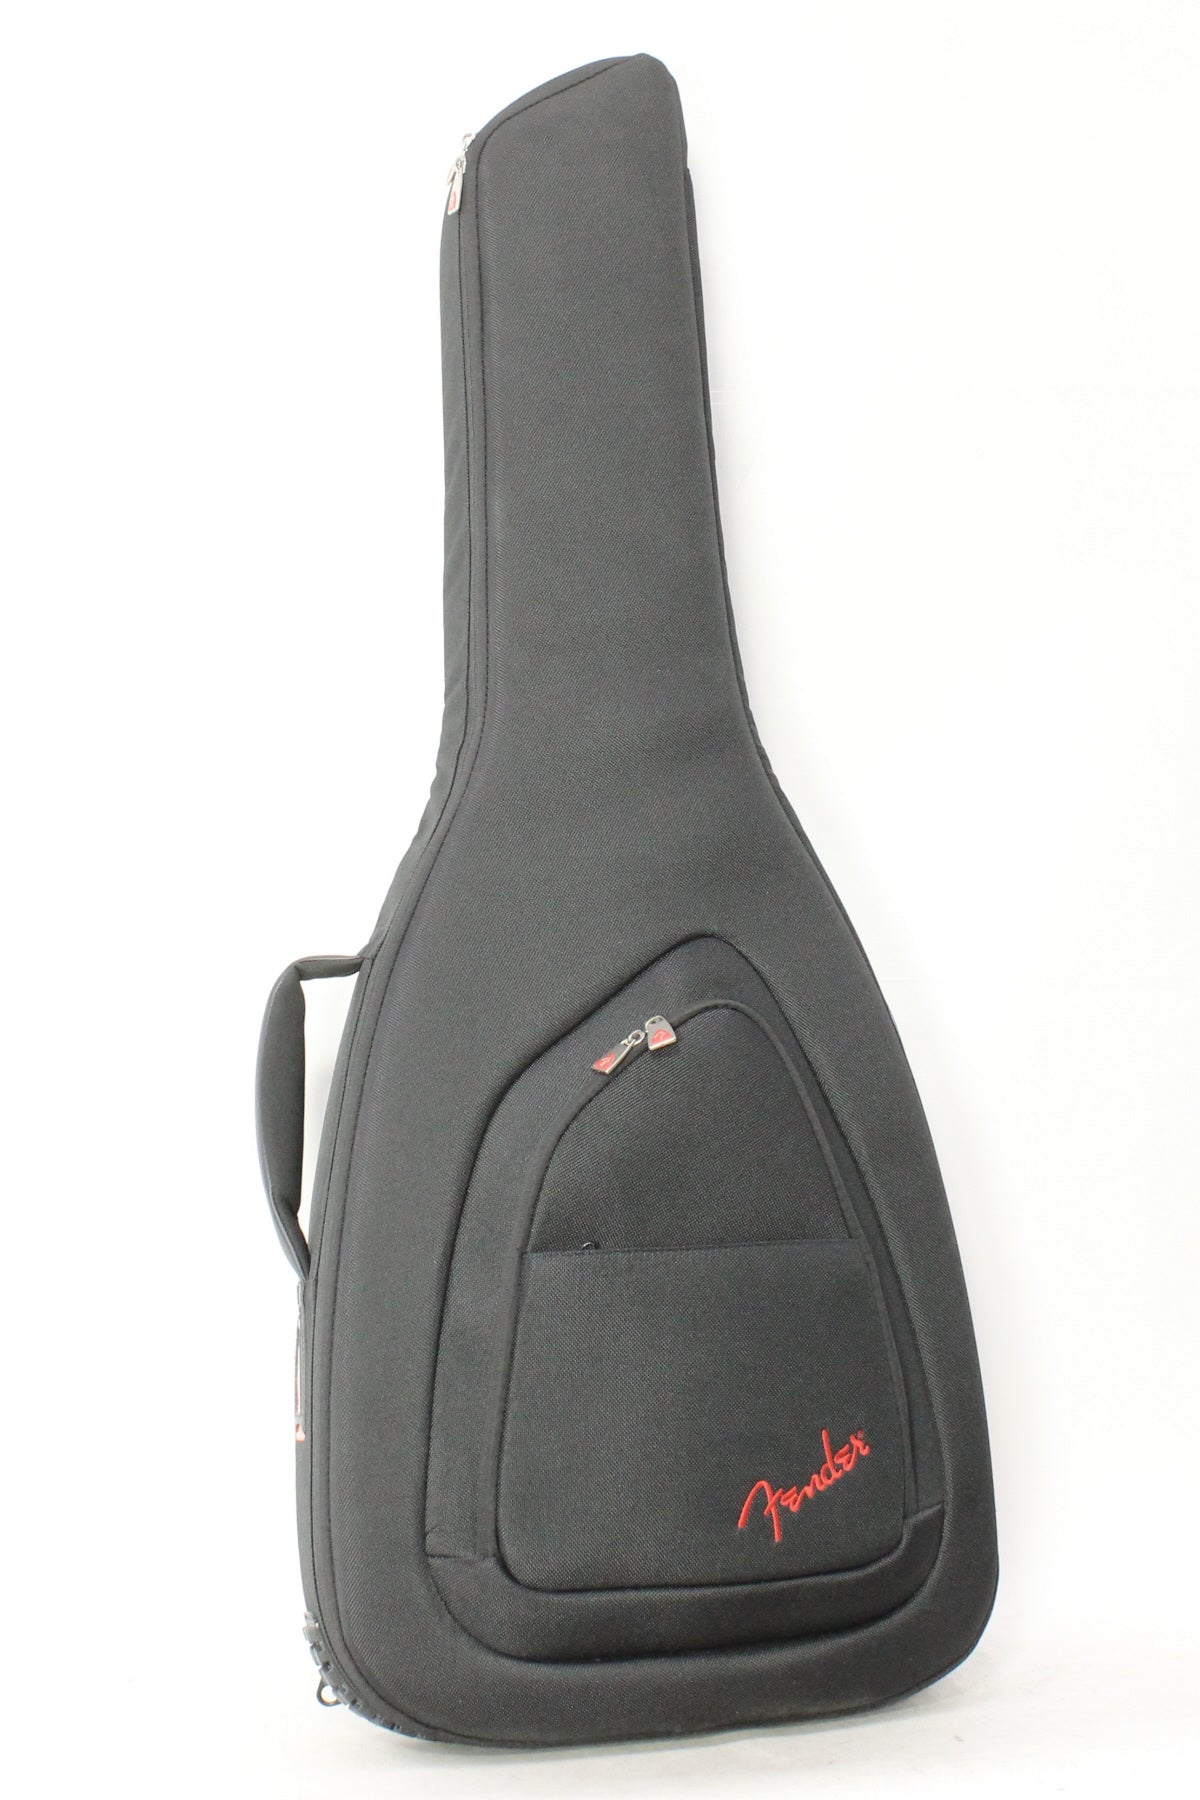 [SN US219575A] USED Fender USA / American Acoustasonic Stratocaster Dakota Red [made in 2021] Fender Acoustasonic [08]